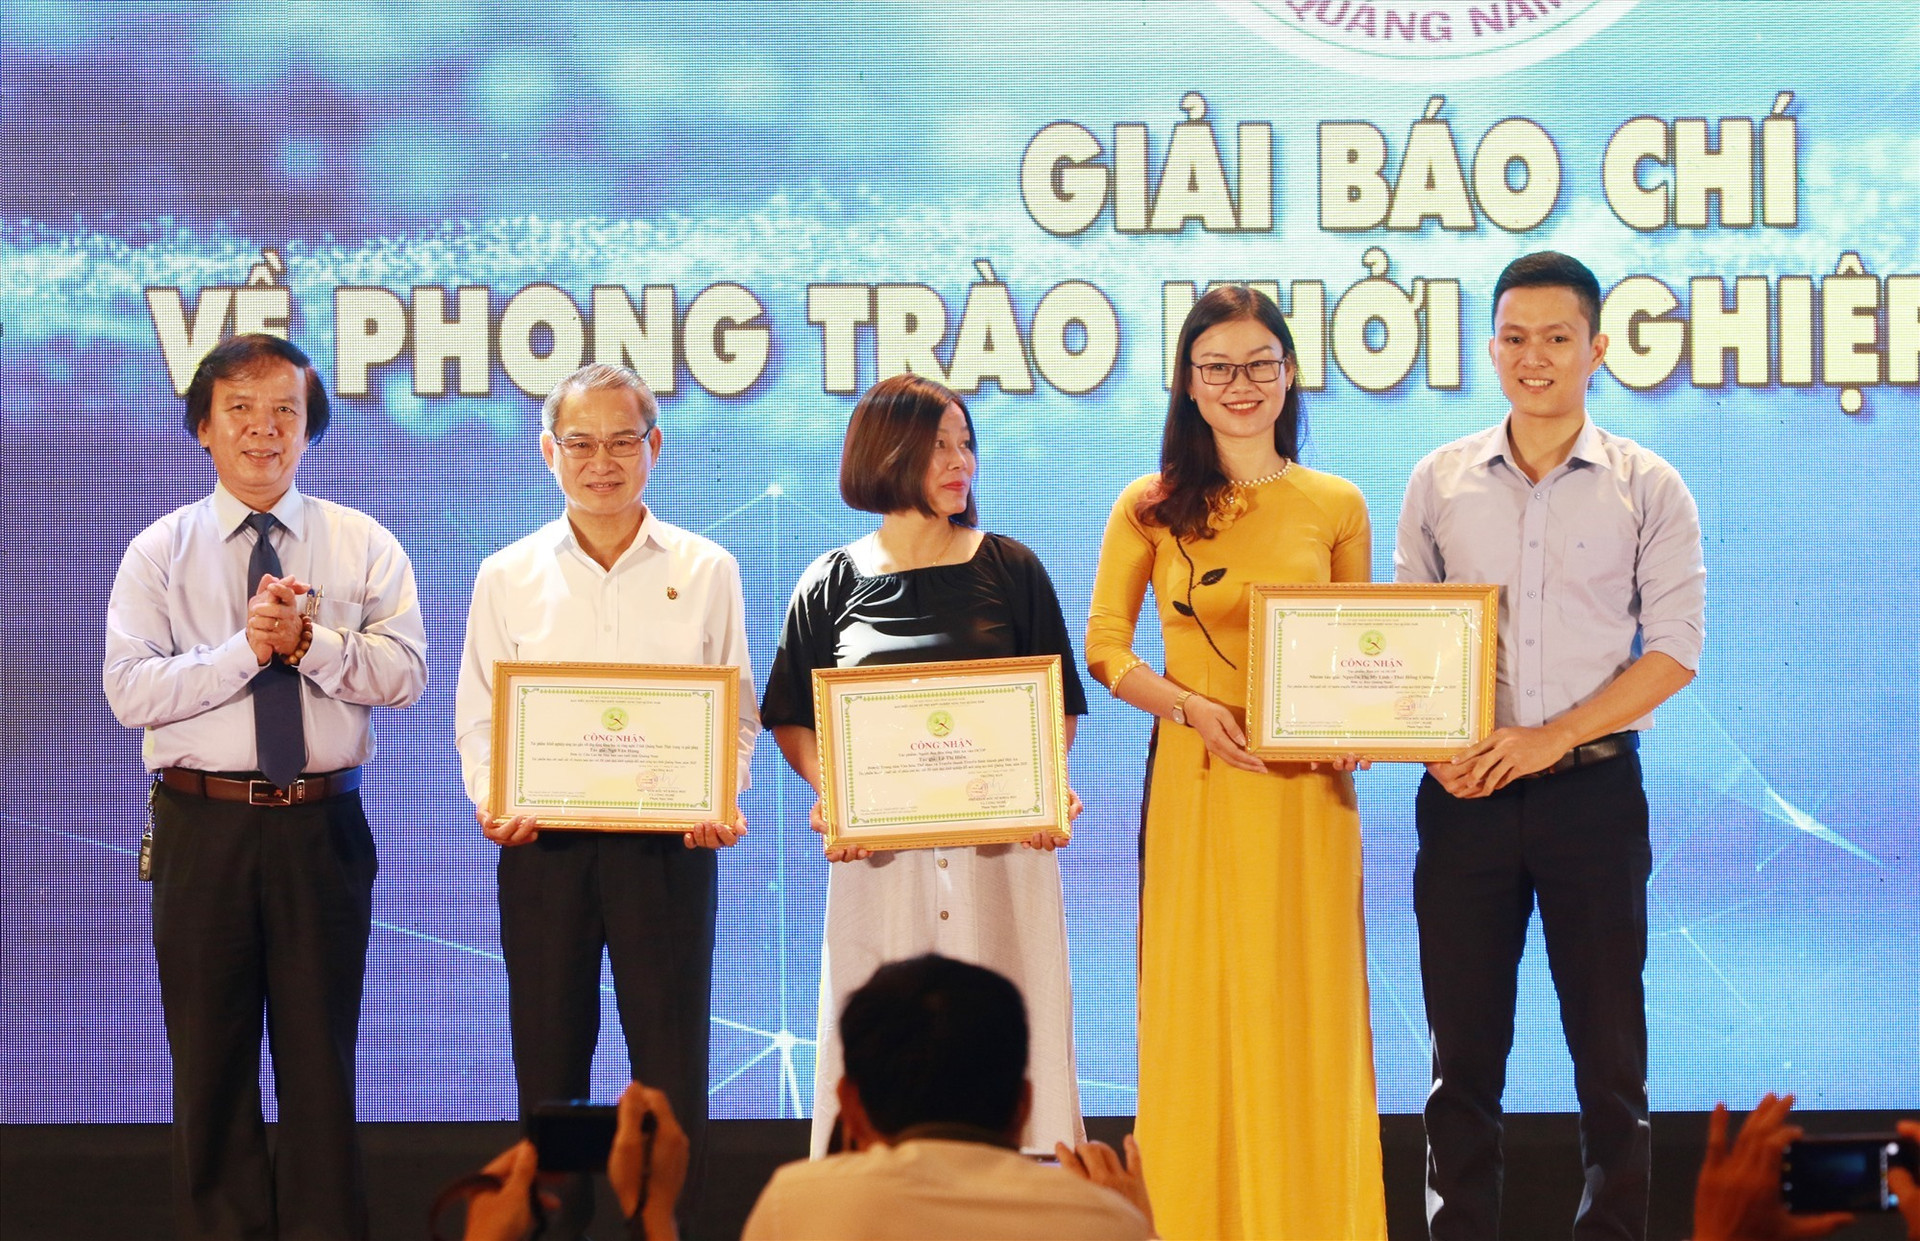 Các tác giả đoạt giải thưởng báo chí về lĩnh vực khởi nghiệp sáng tạo của tỉnh Quảng Nam nhận giải. Ảnh: THÀNH CÔNG